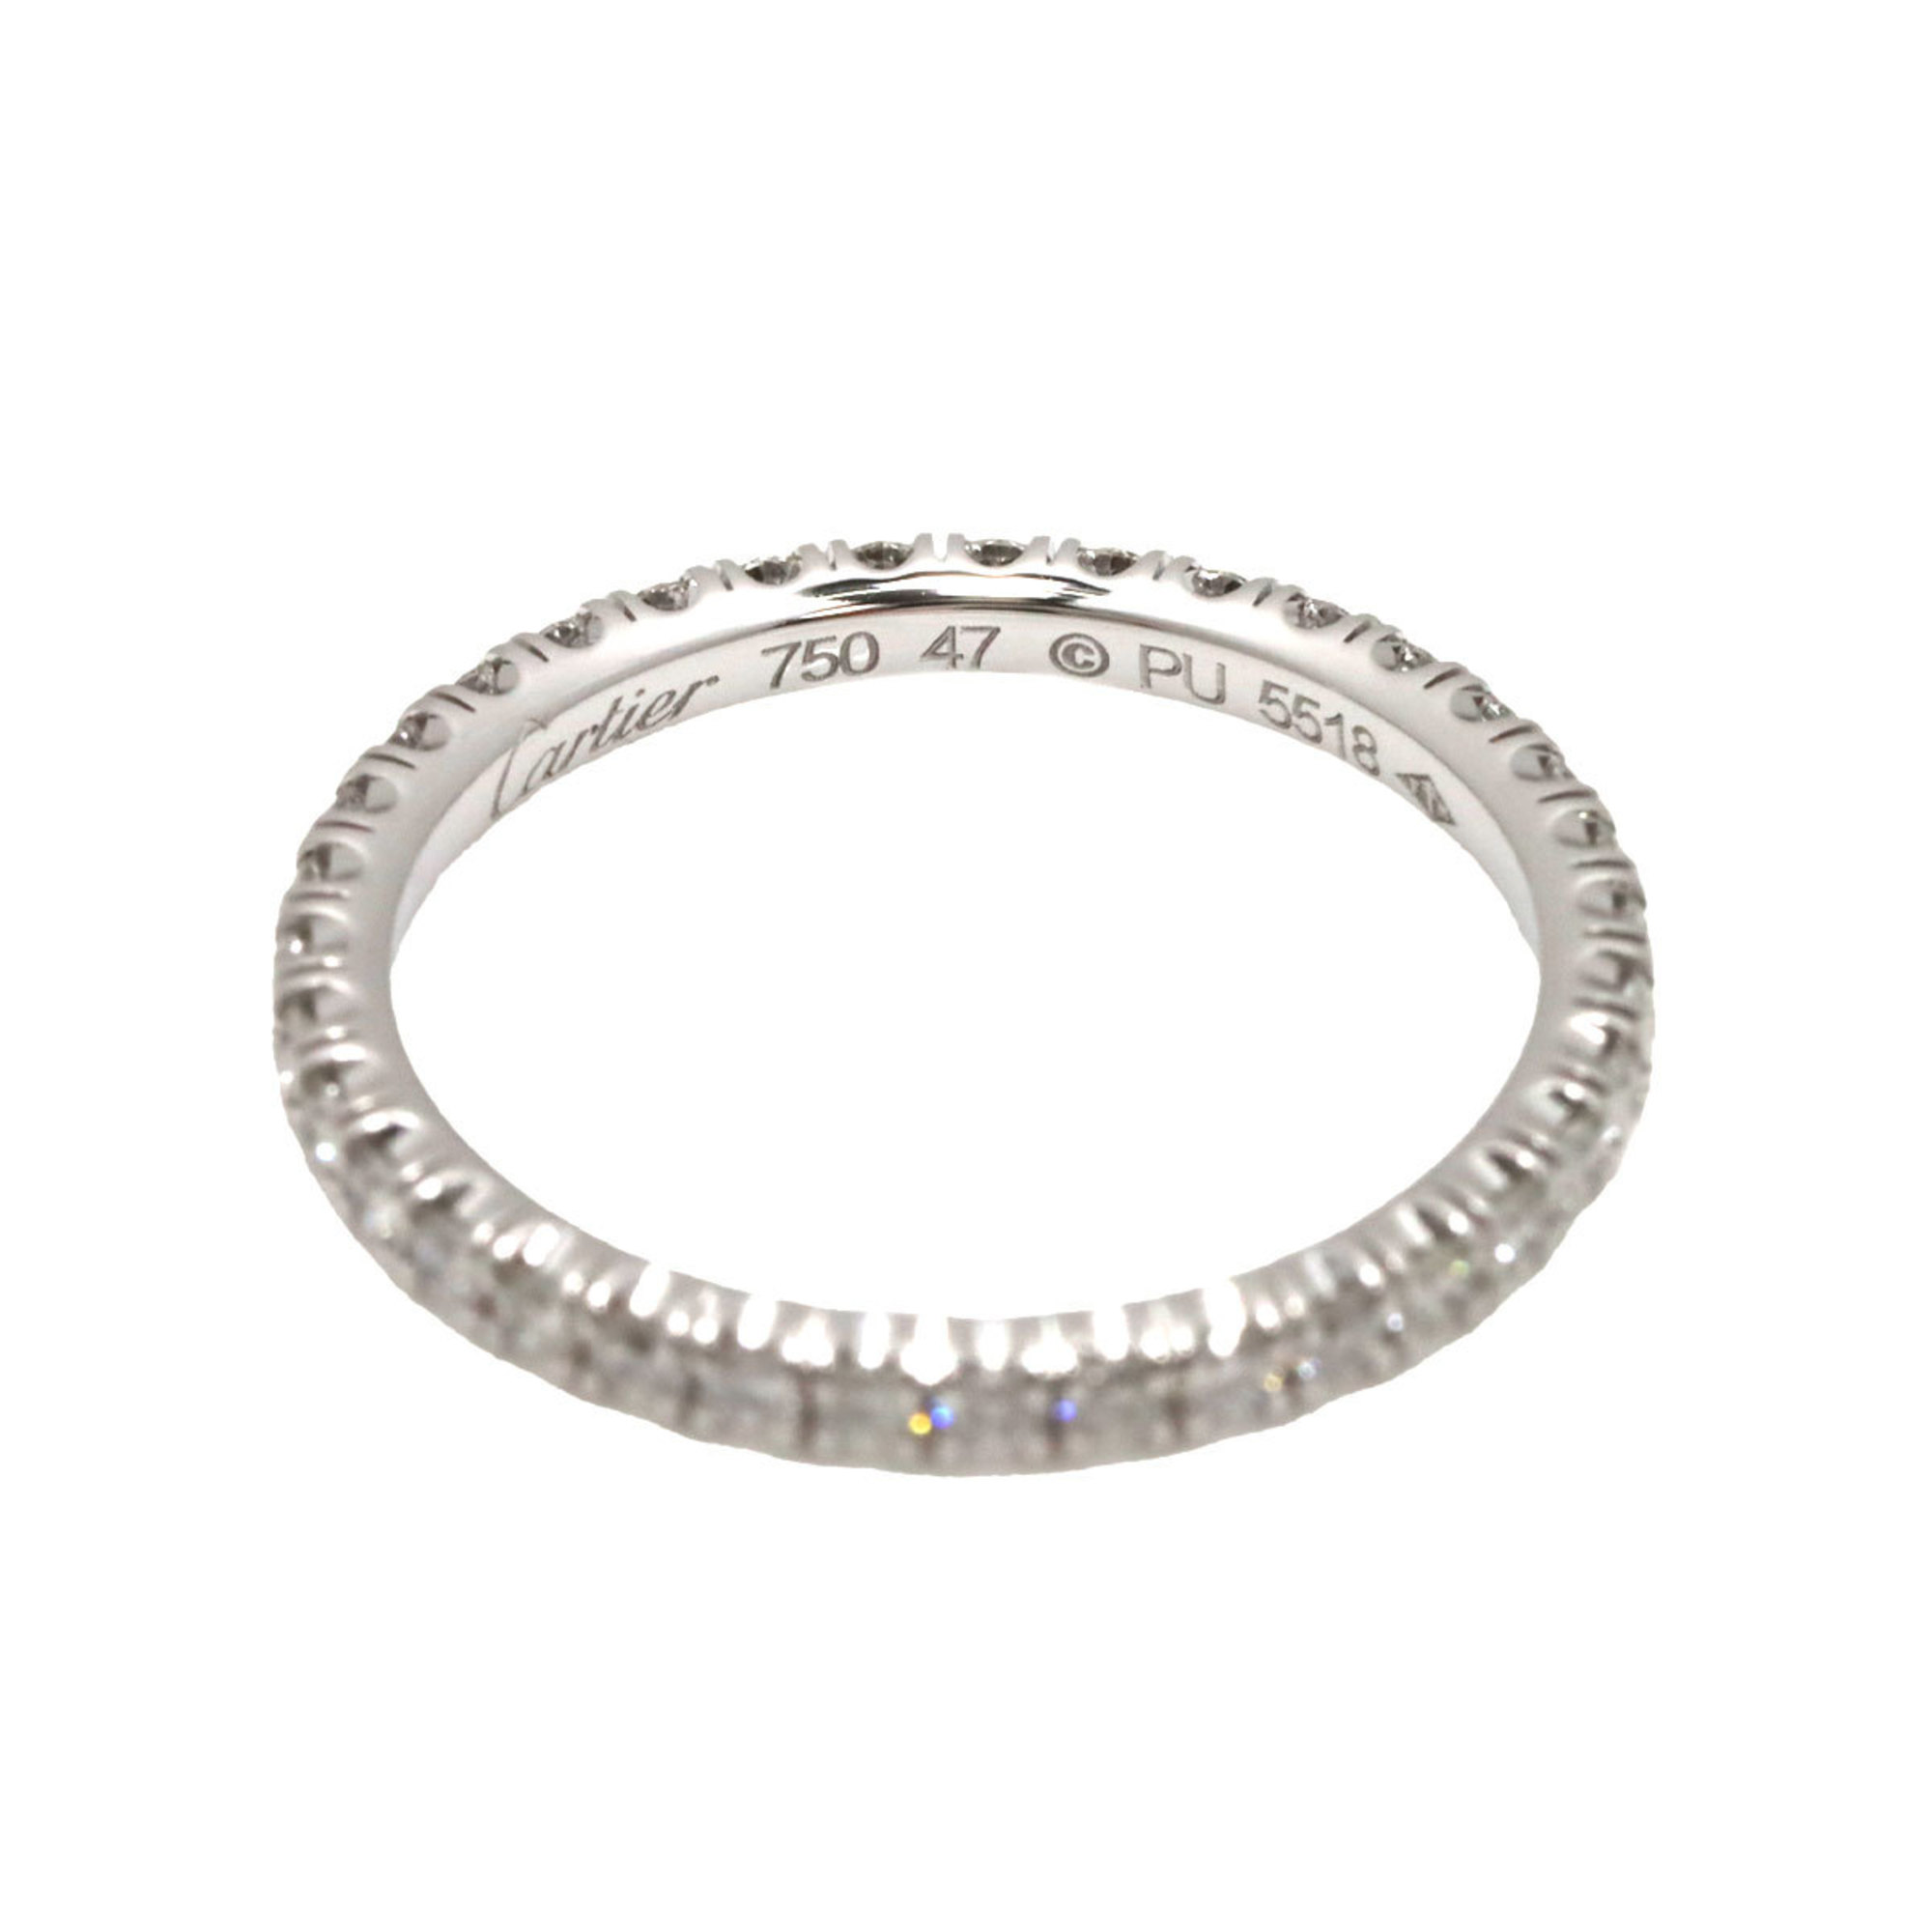 Cartier ETINCELLE #47 Ring Full Diamond K18 WG White Gold 750